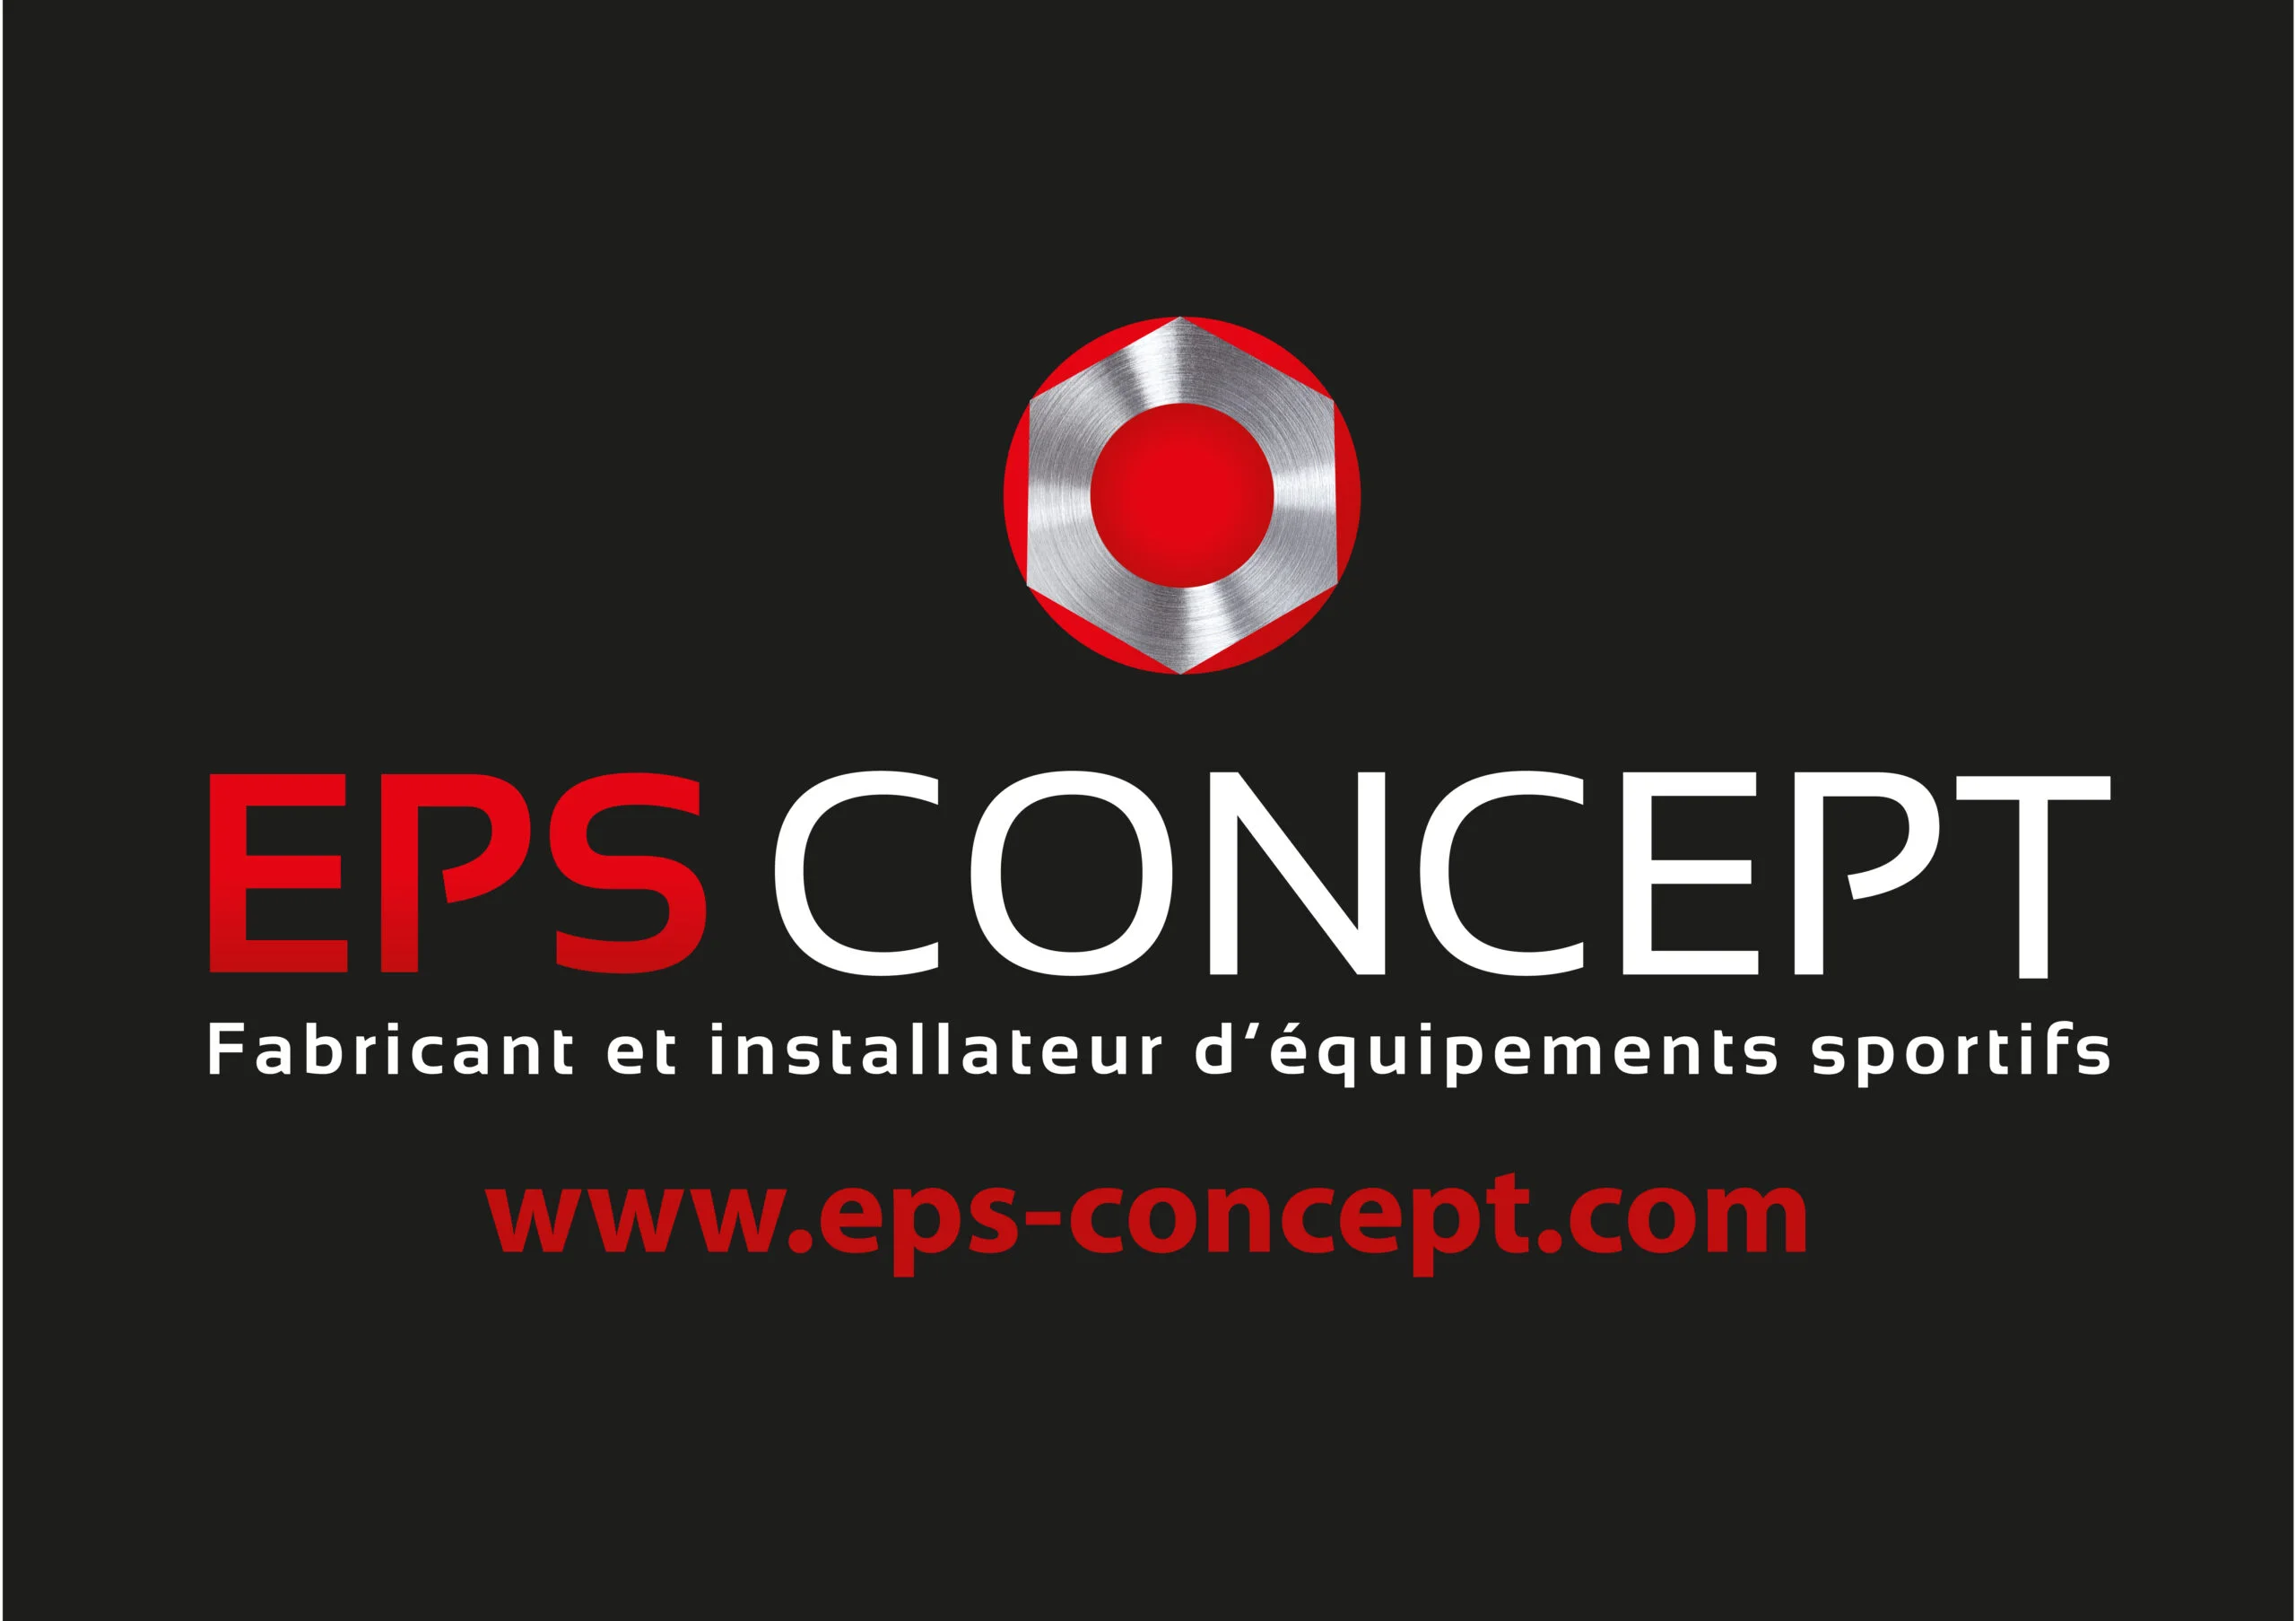 eps-concept-logo